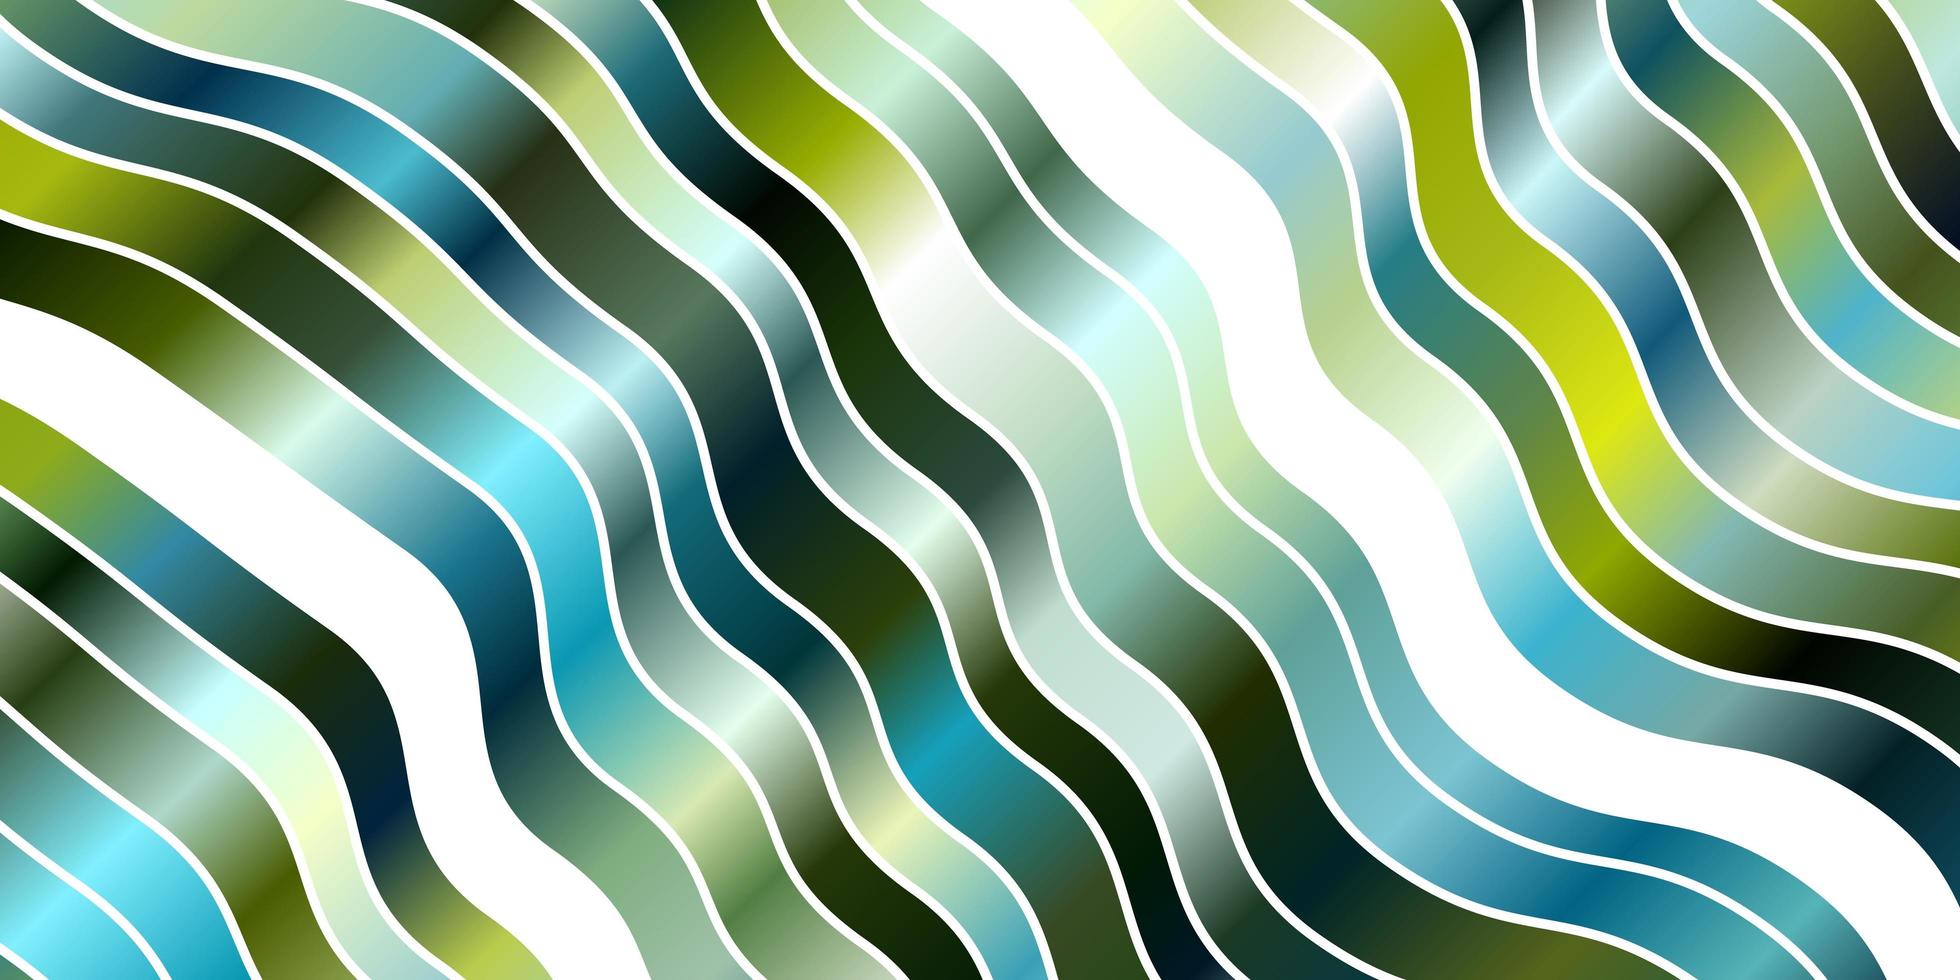 patrón de vector azul claro, verde con líneas curvas.